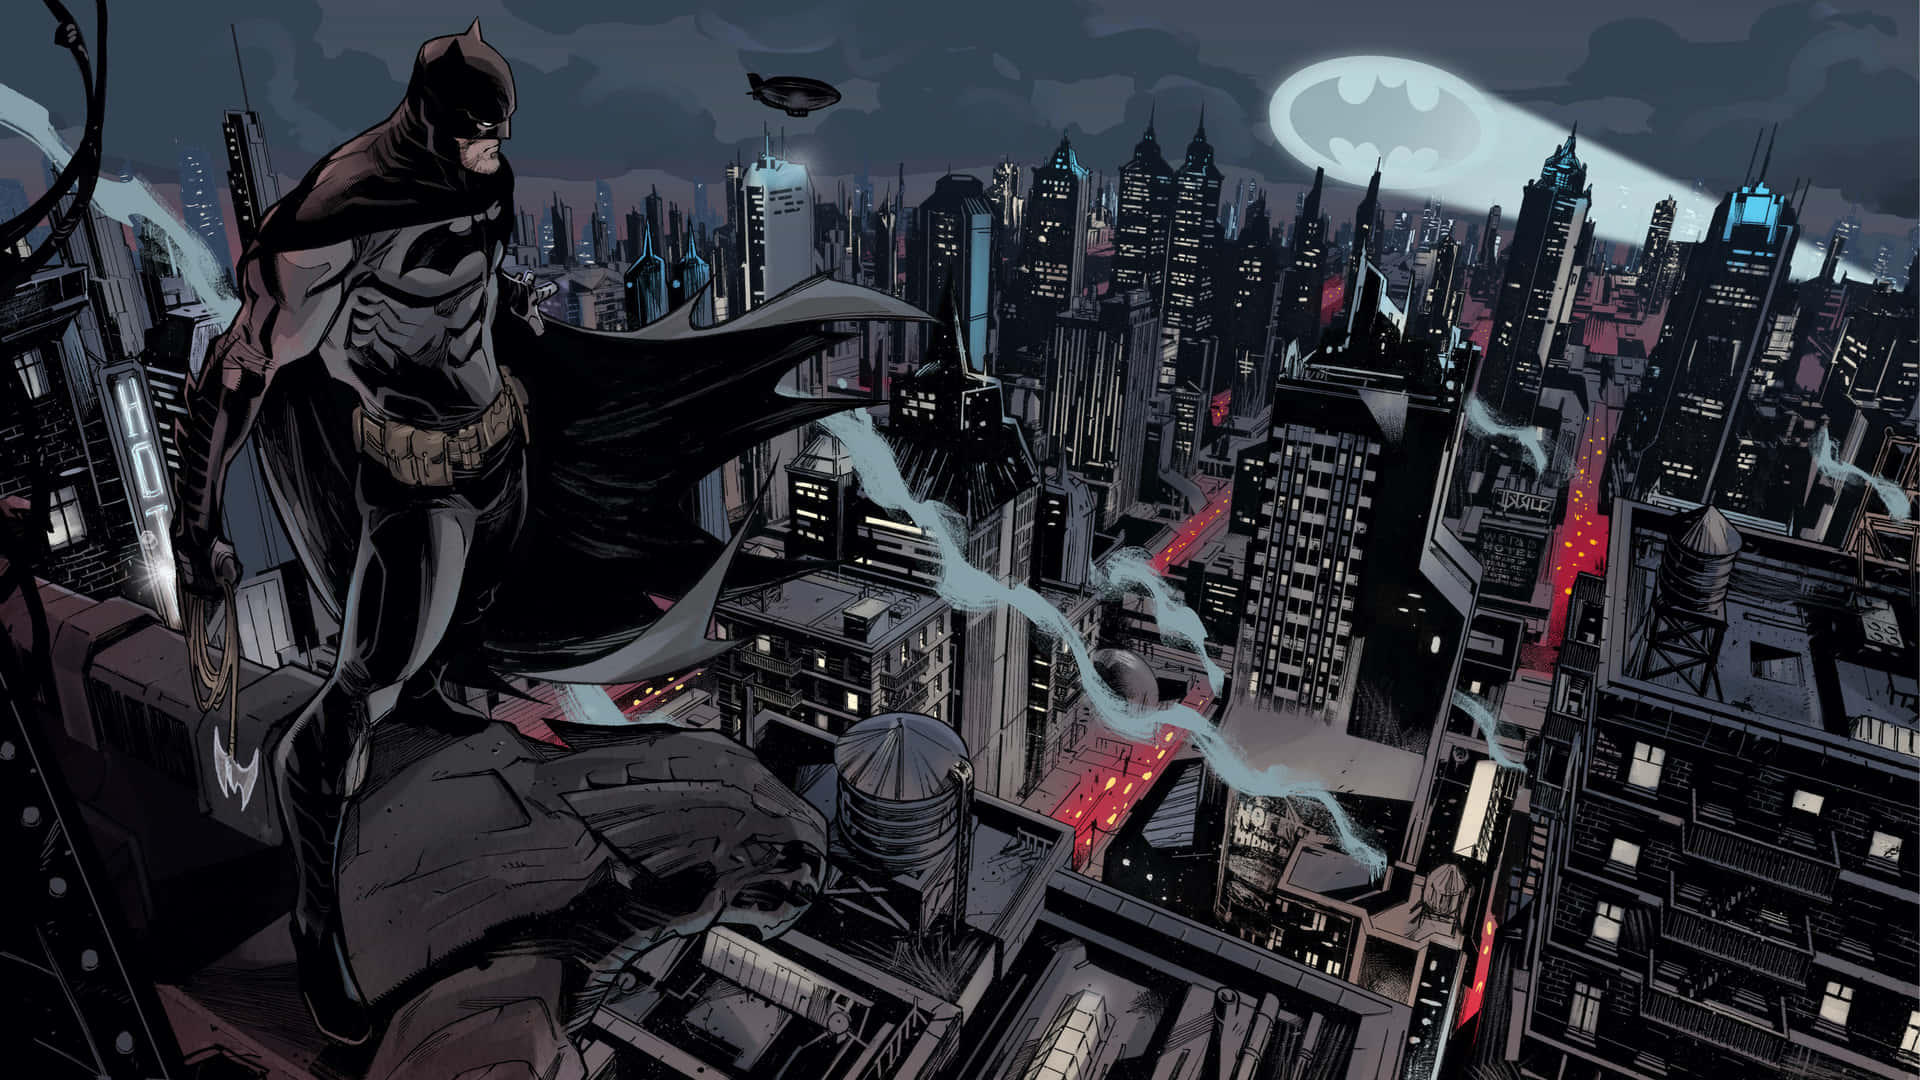 Immagini Di Gotham City